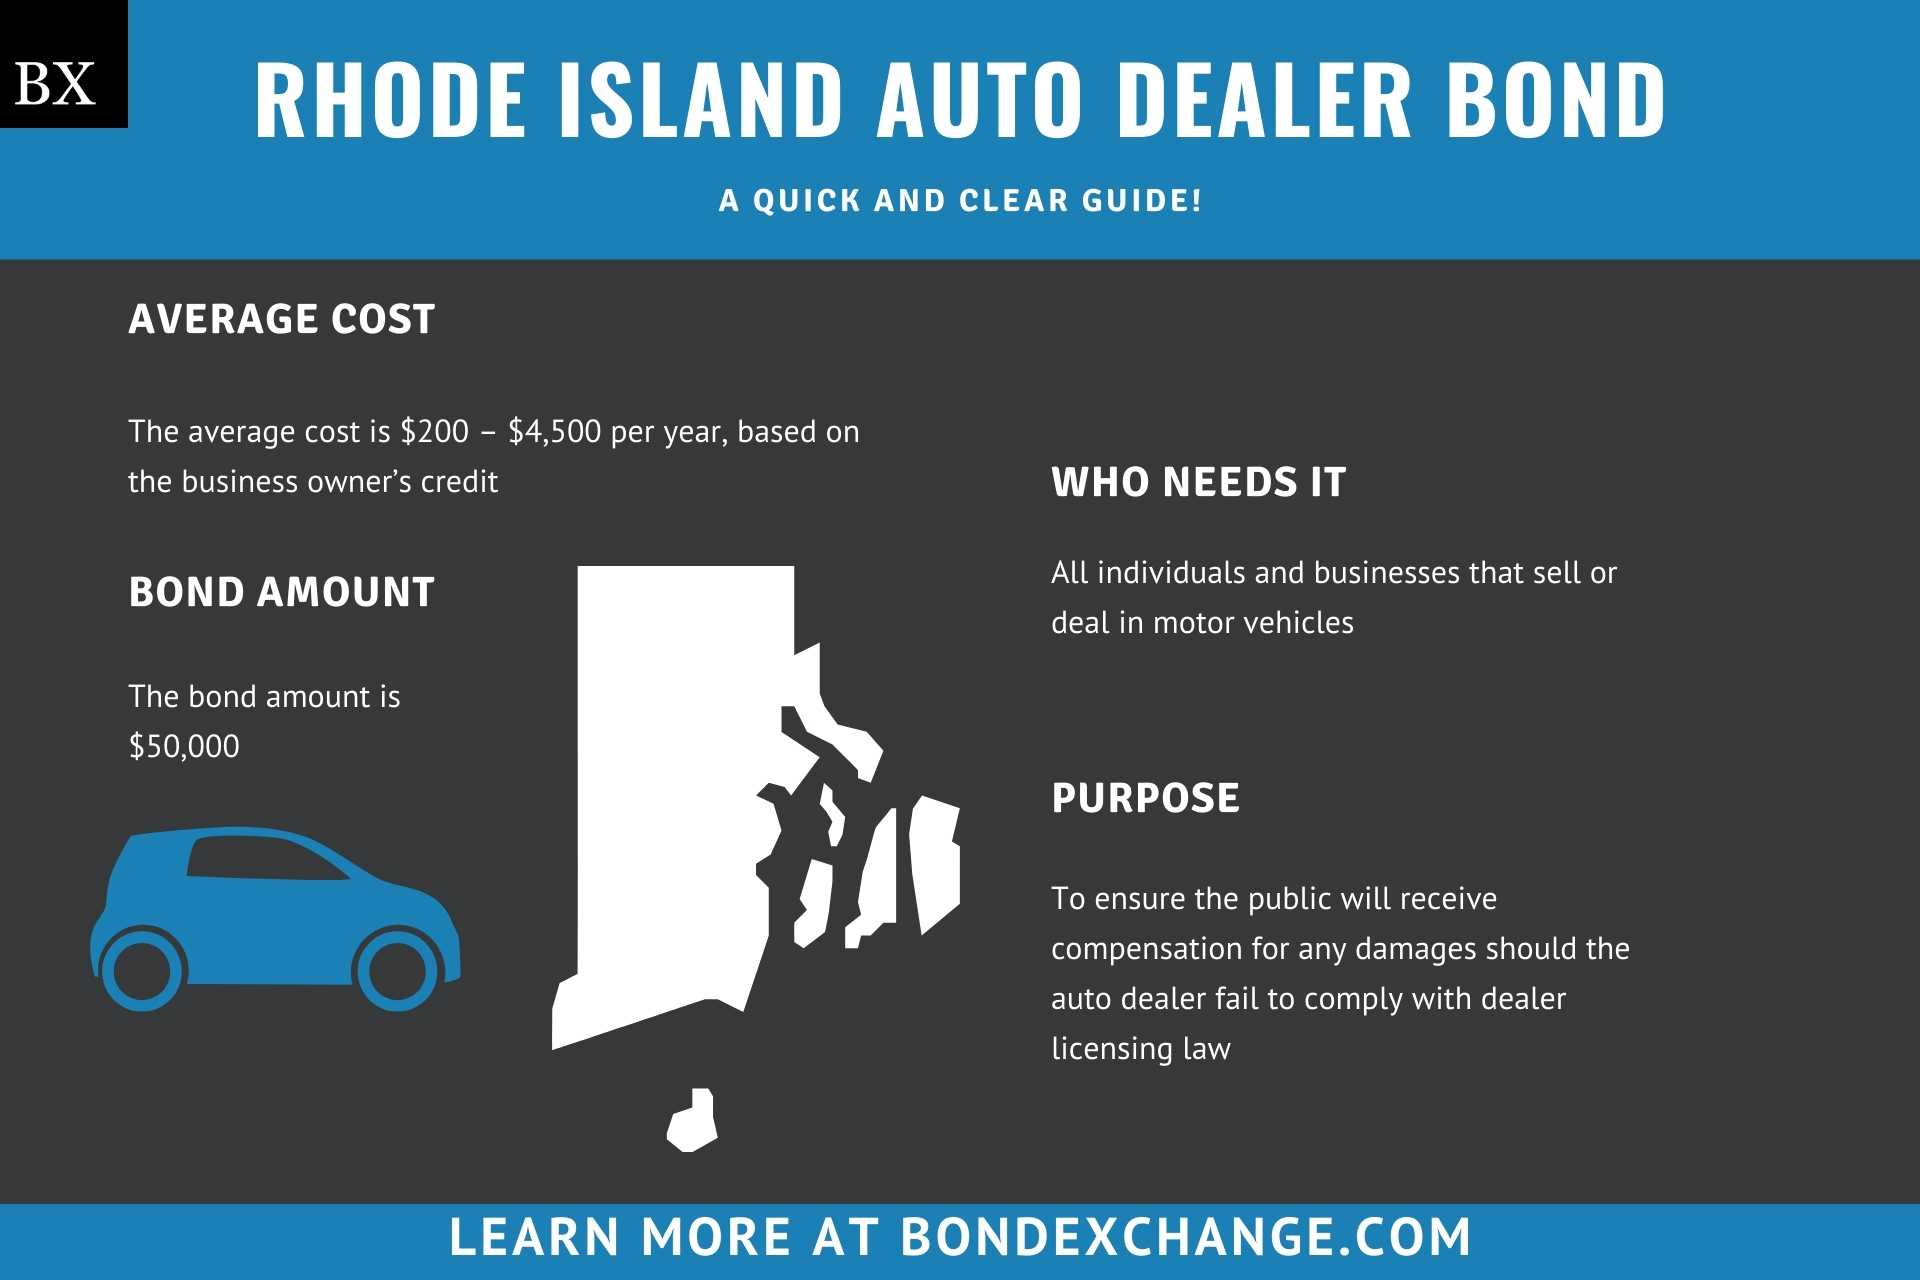 Rhode Island Auto Dealer Bond